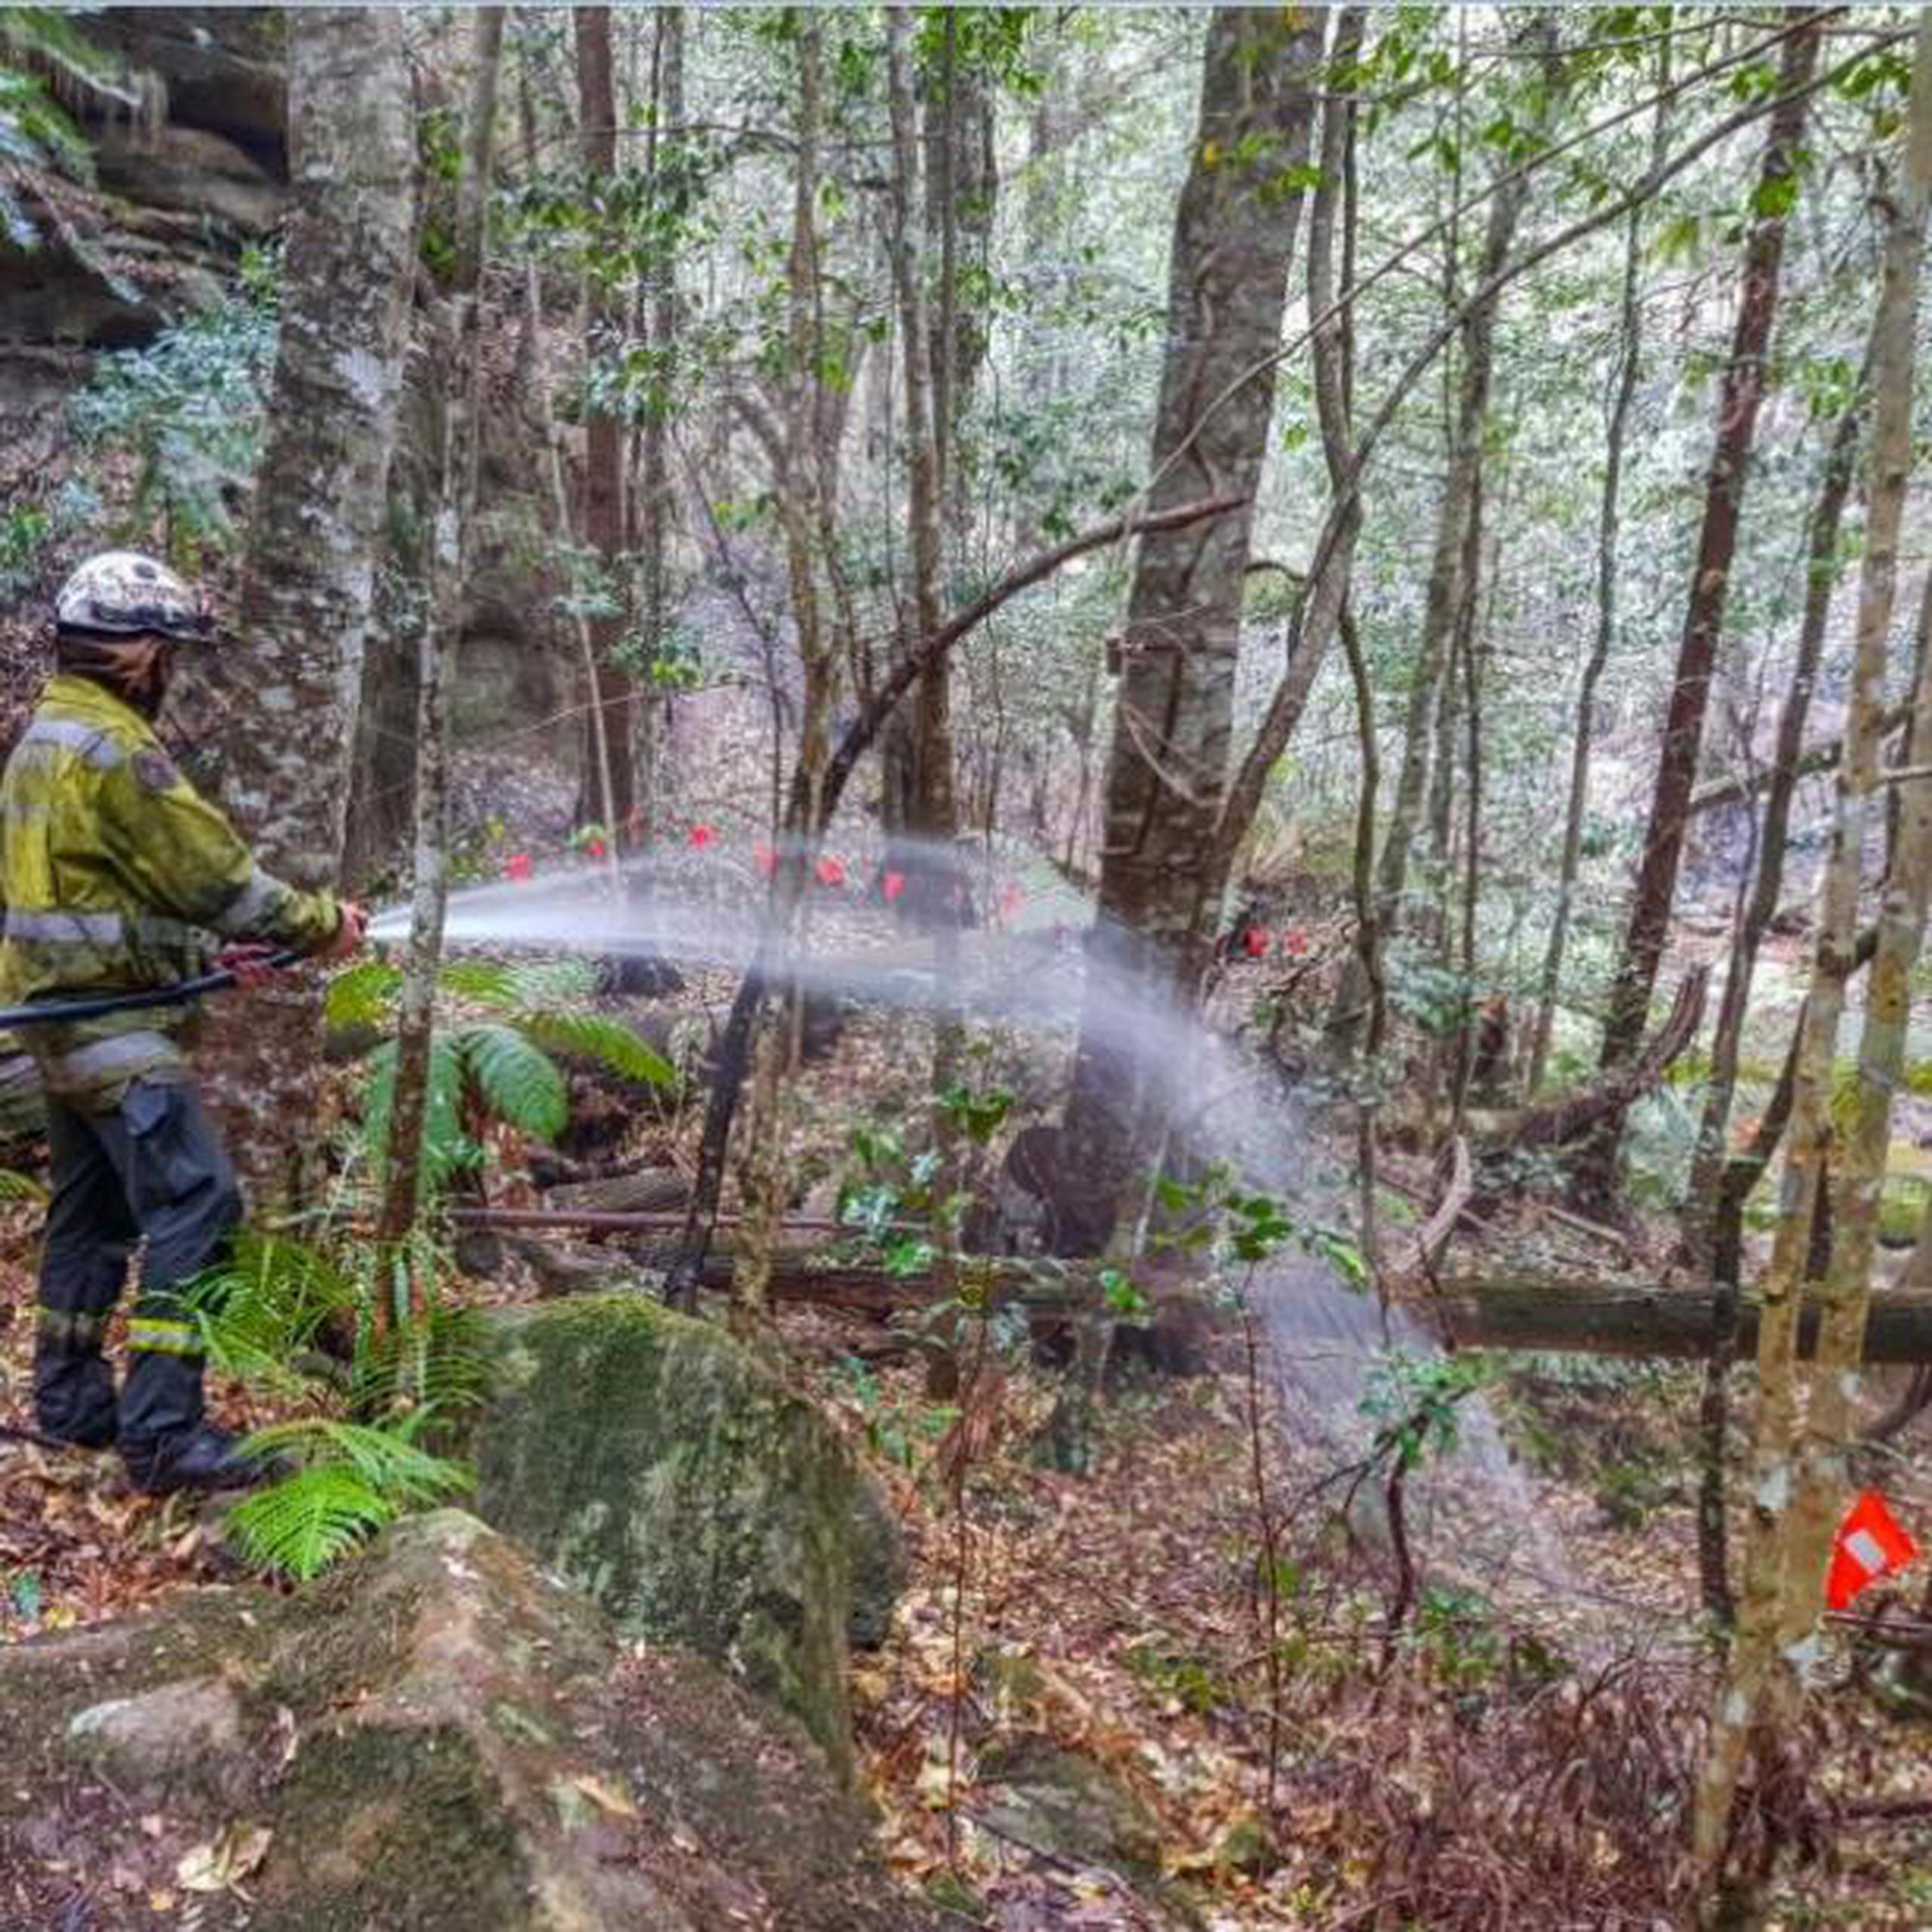 Los bomberos montaron un sistema de irrigación para mantener a los árboles húmedos y bombearon agua todos los días desde el cañón mientras se acercaba el incendio que llevaba más de un mes sin control. (AP)